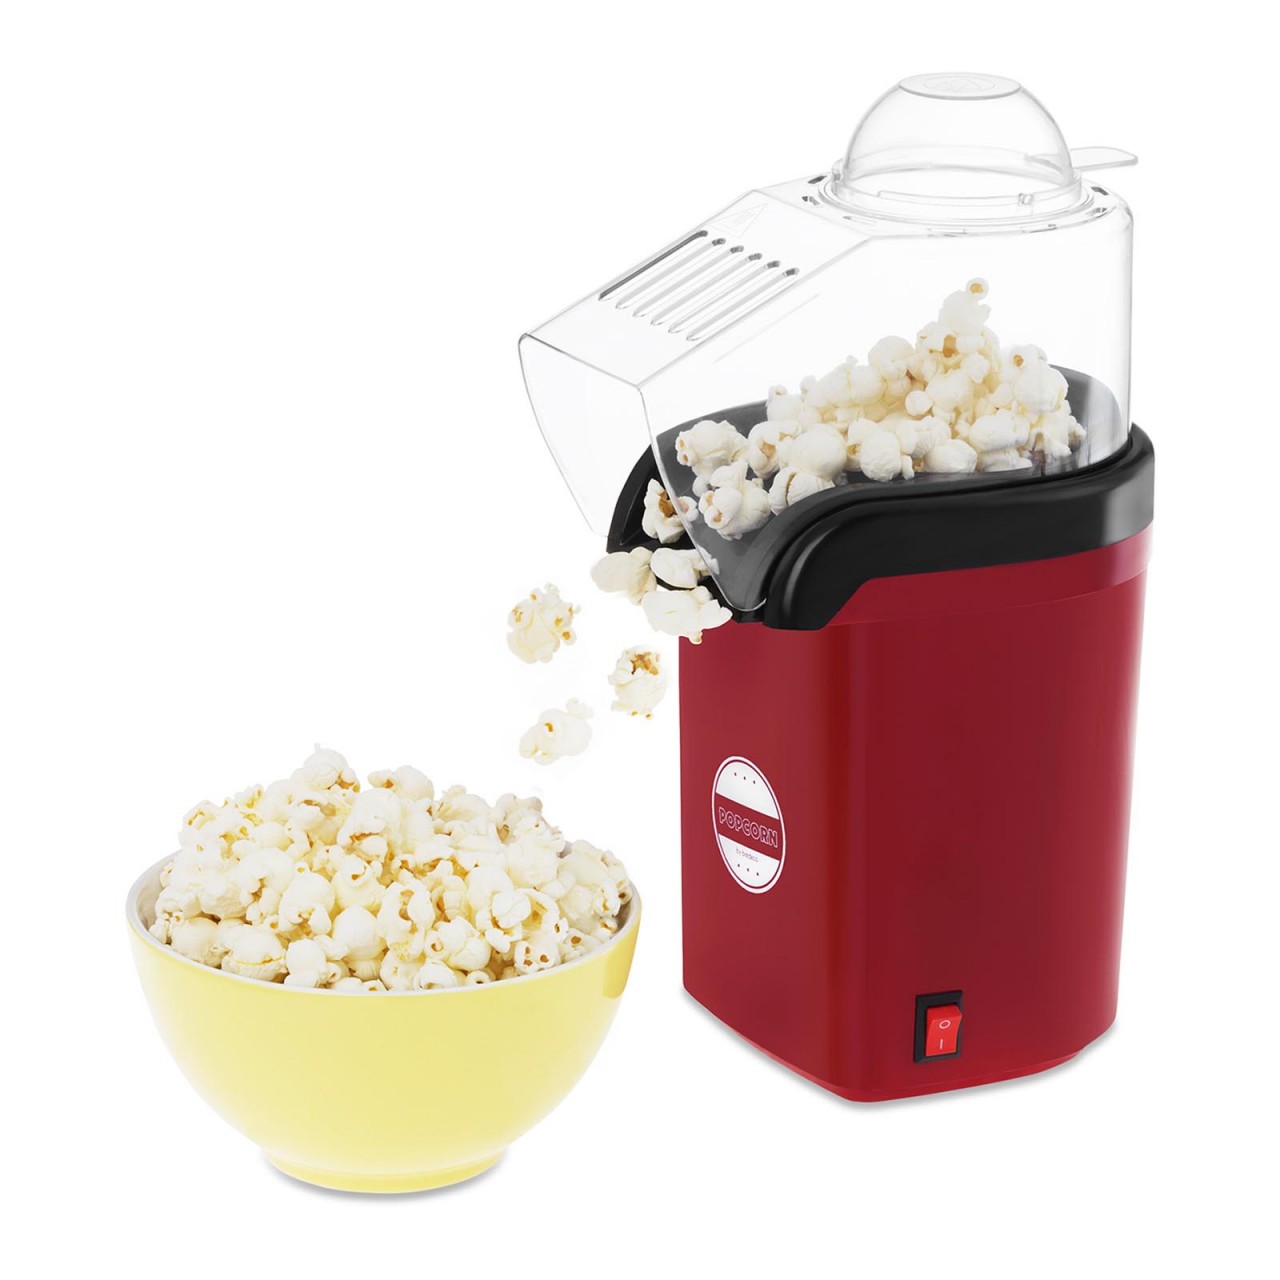 Popcornmaschine Popcornmaker Popcornautomat Popcorn Maker 1200W Kino Heißluft DE 